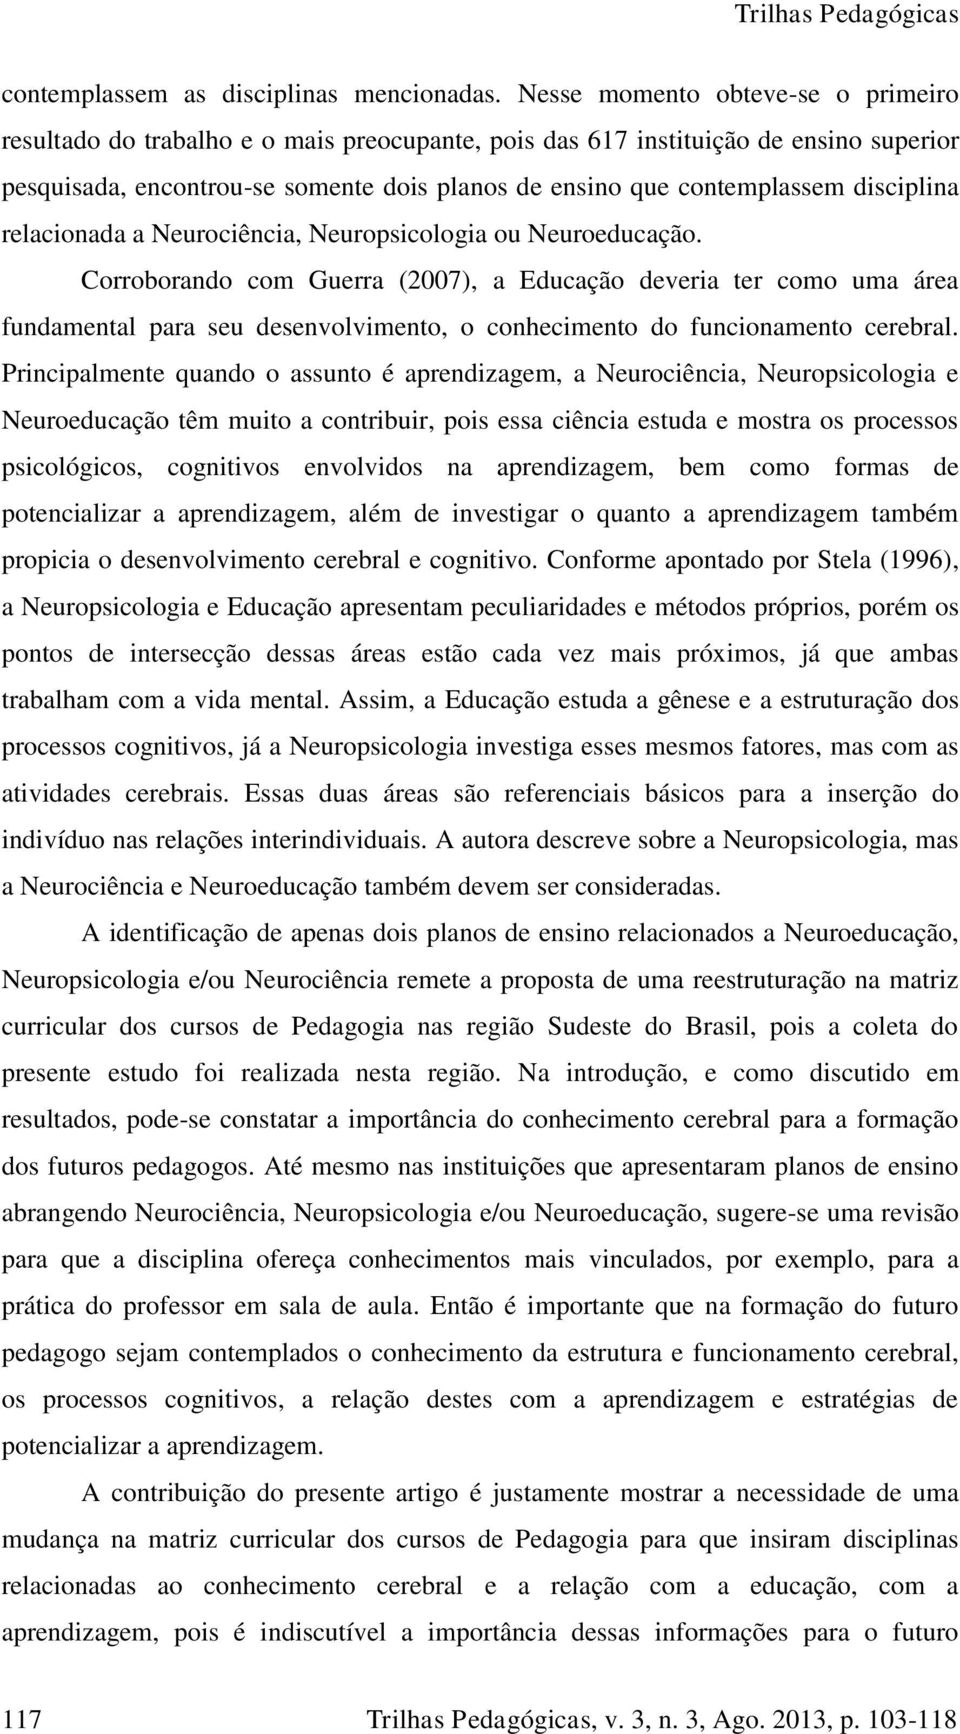 disciplina relacionada a Neurociência, Neuropsicologia ou Neuroeducação.